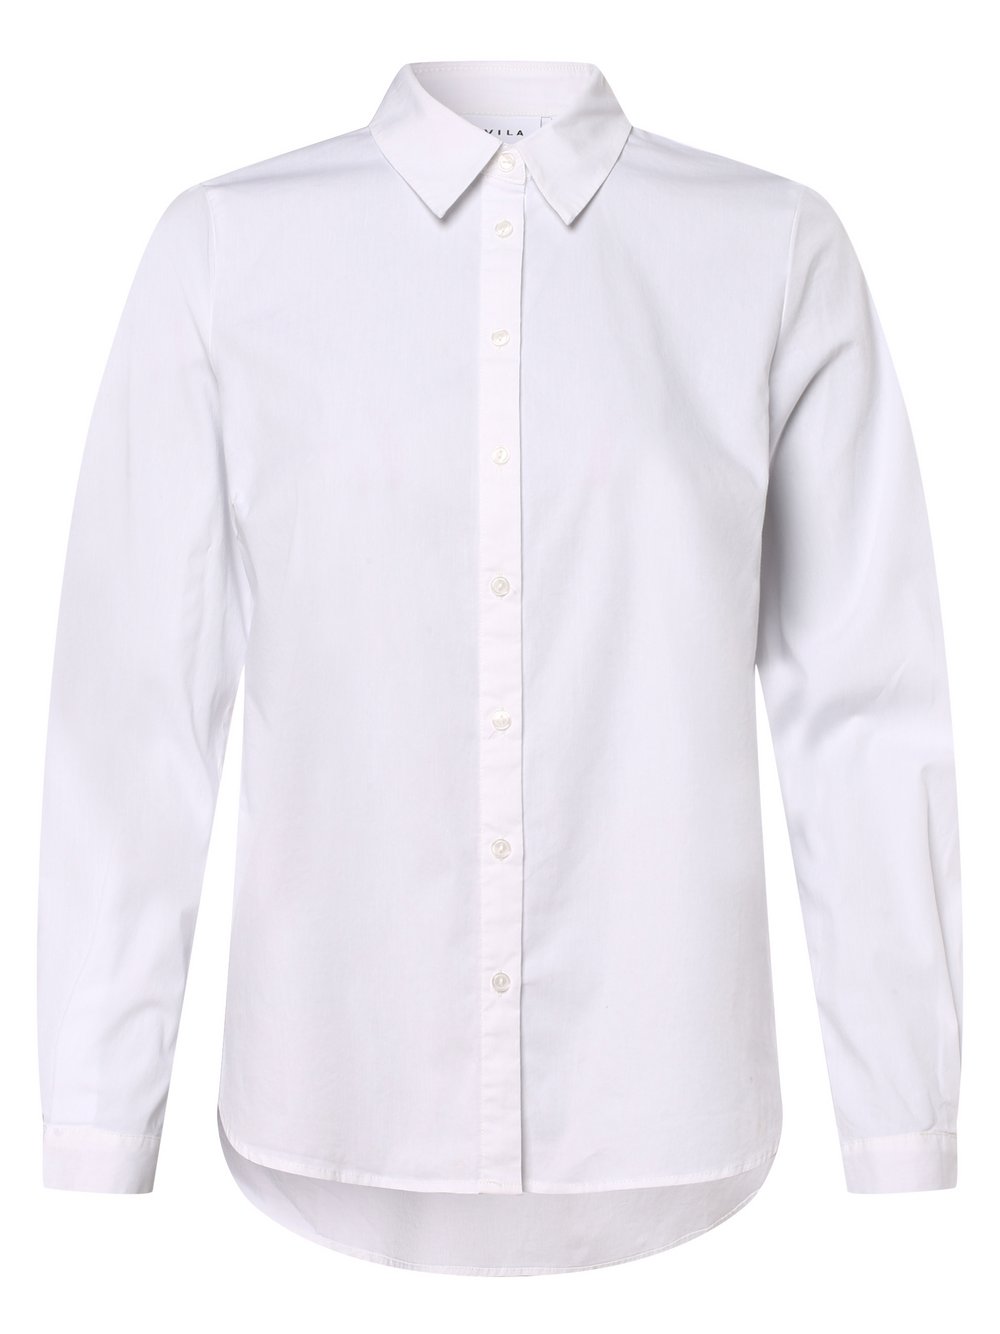 Damen Einfarbig Rundhals kurzärmliges Trikot T-Shirt Top einfach Bluse 8-20